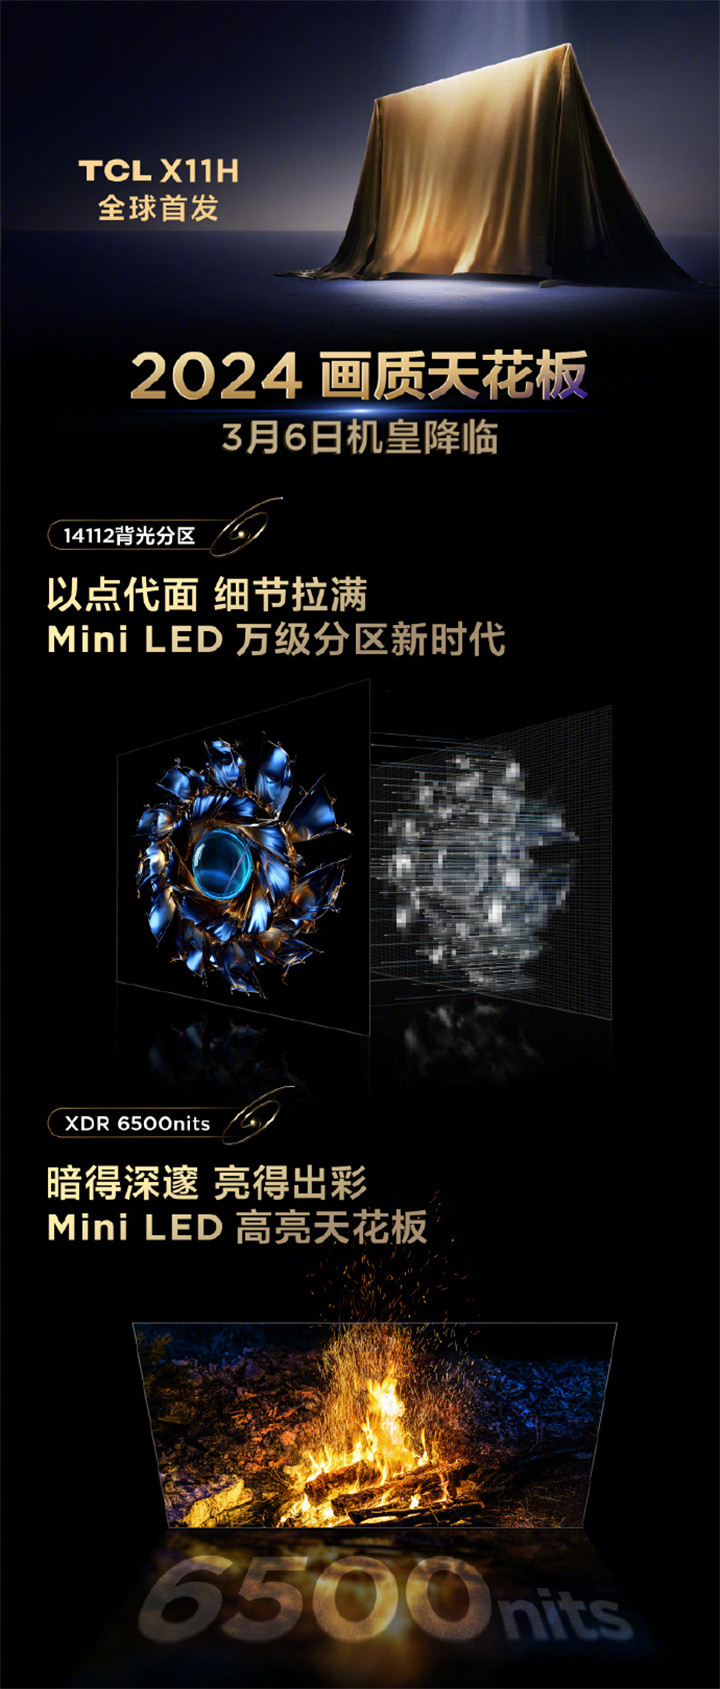 TCL QD-Mini LED电视新品发布会3月6日举办 TCL X11将发布